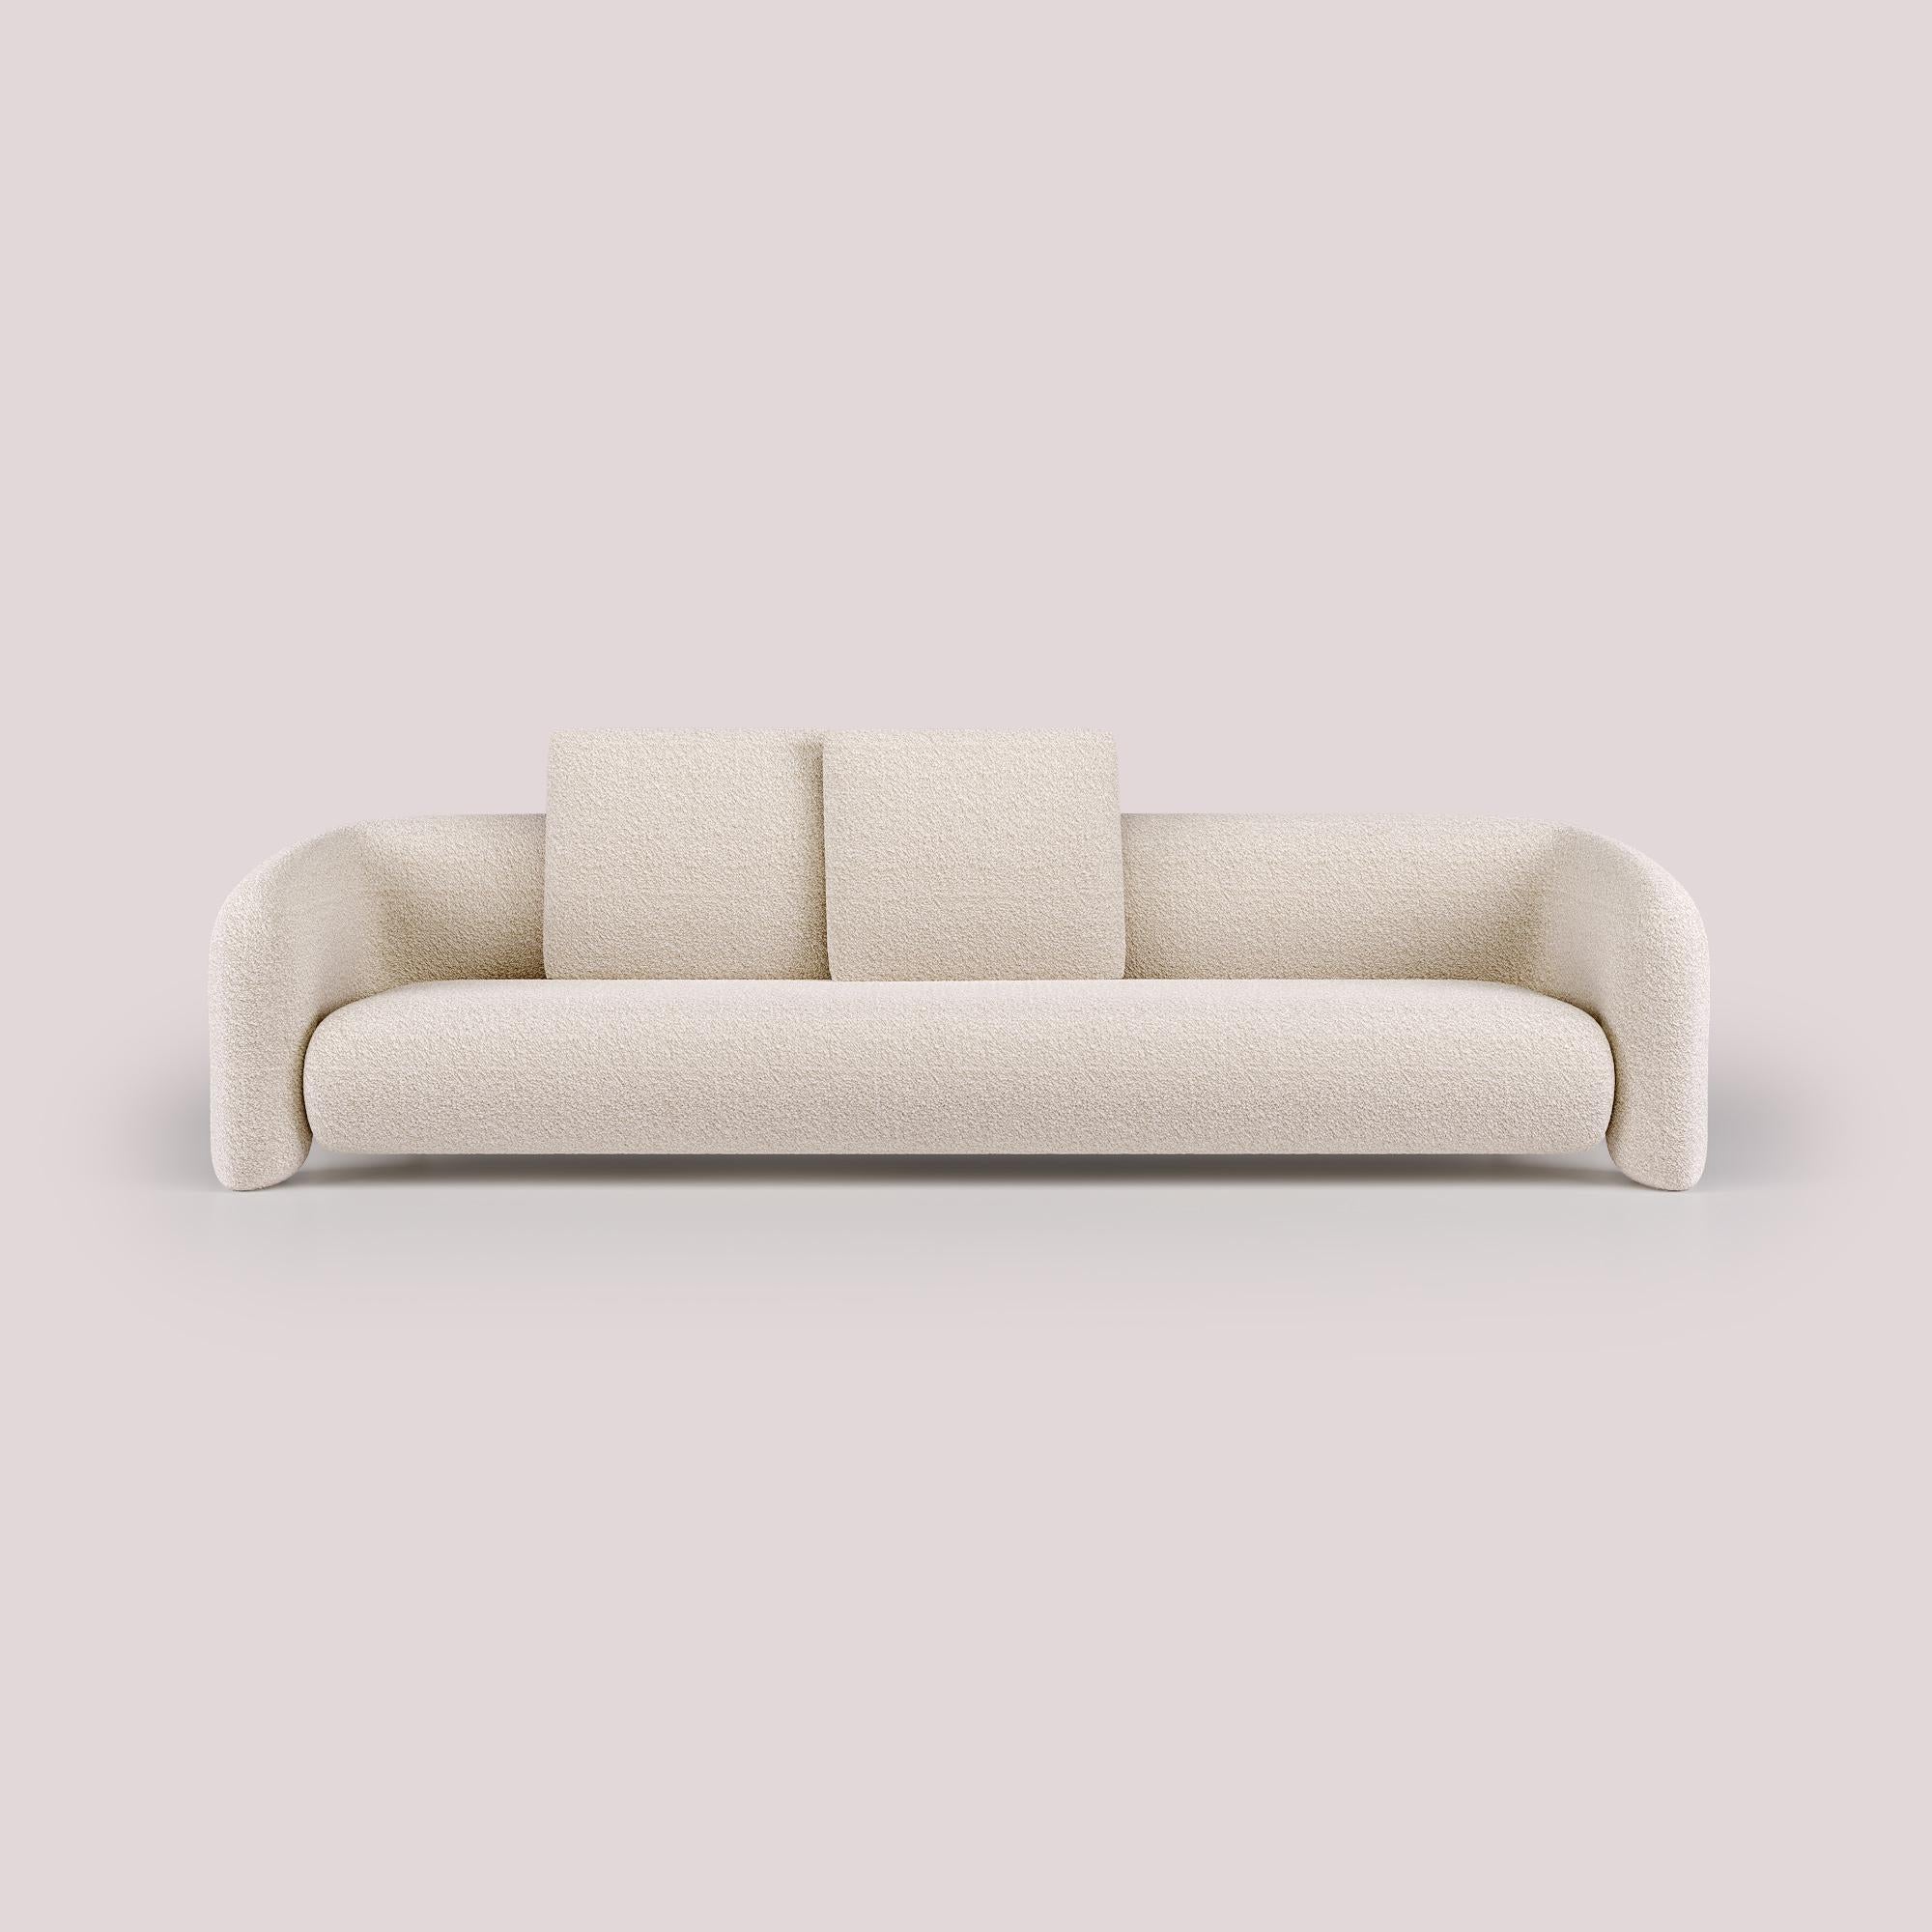 Avec son design épuré et moderne, cette version du Bold Sofa apporte un nouveau niveau de confort, offrant un large espace pour une pure relaxation. Les lignes épurées et la forme franche, complétées par ses bras ouverts, renforcent le sentiment